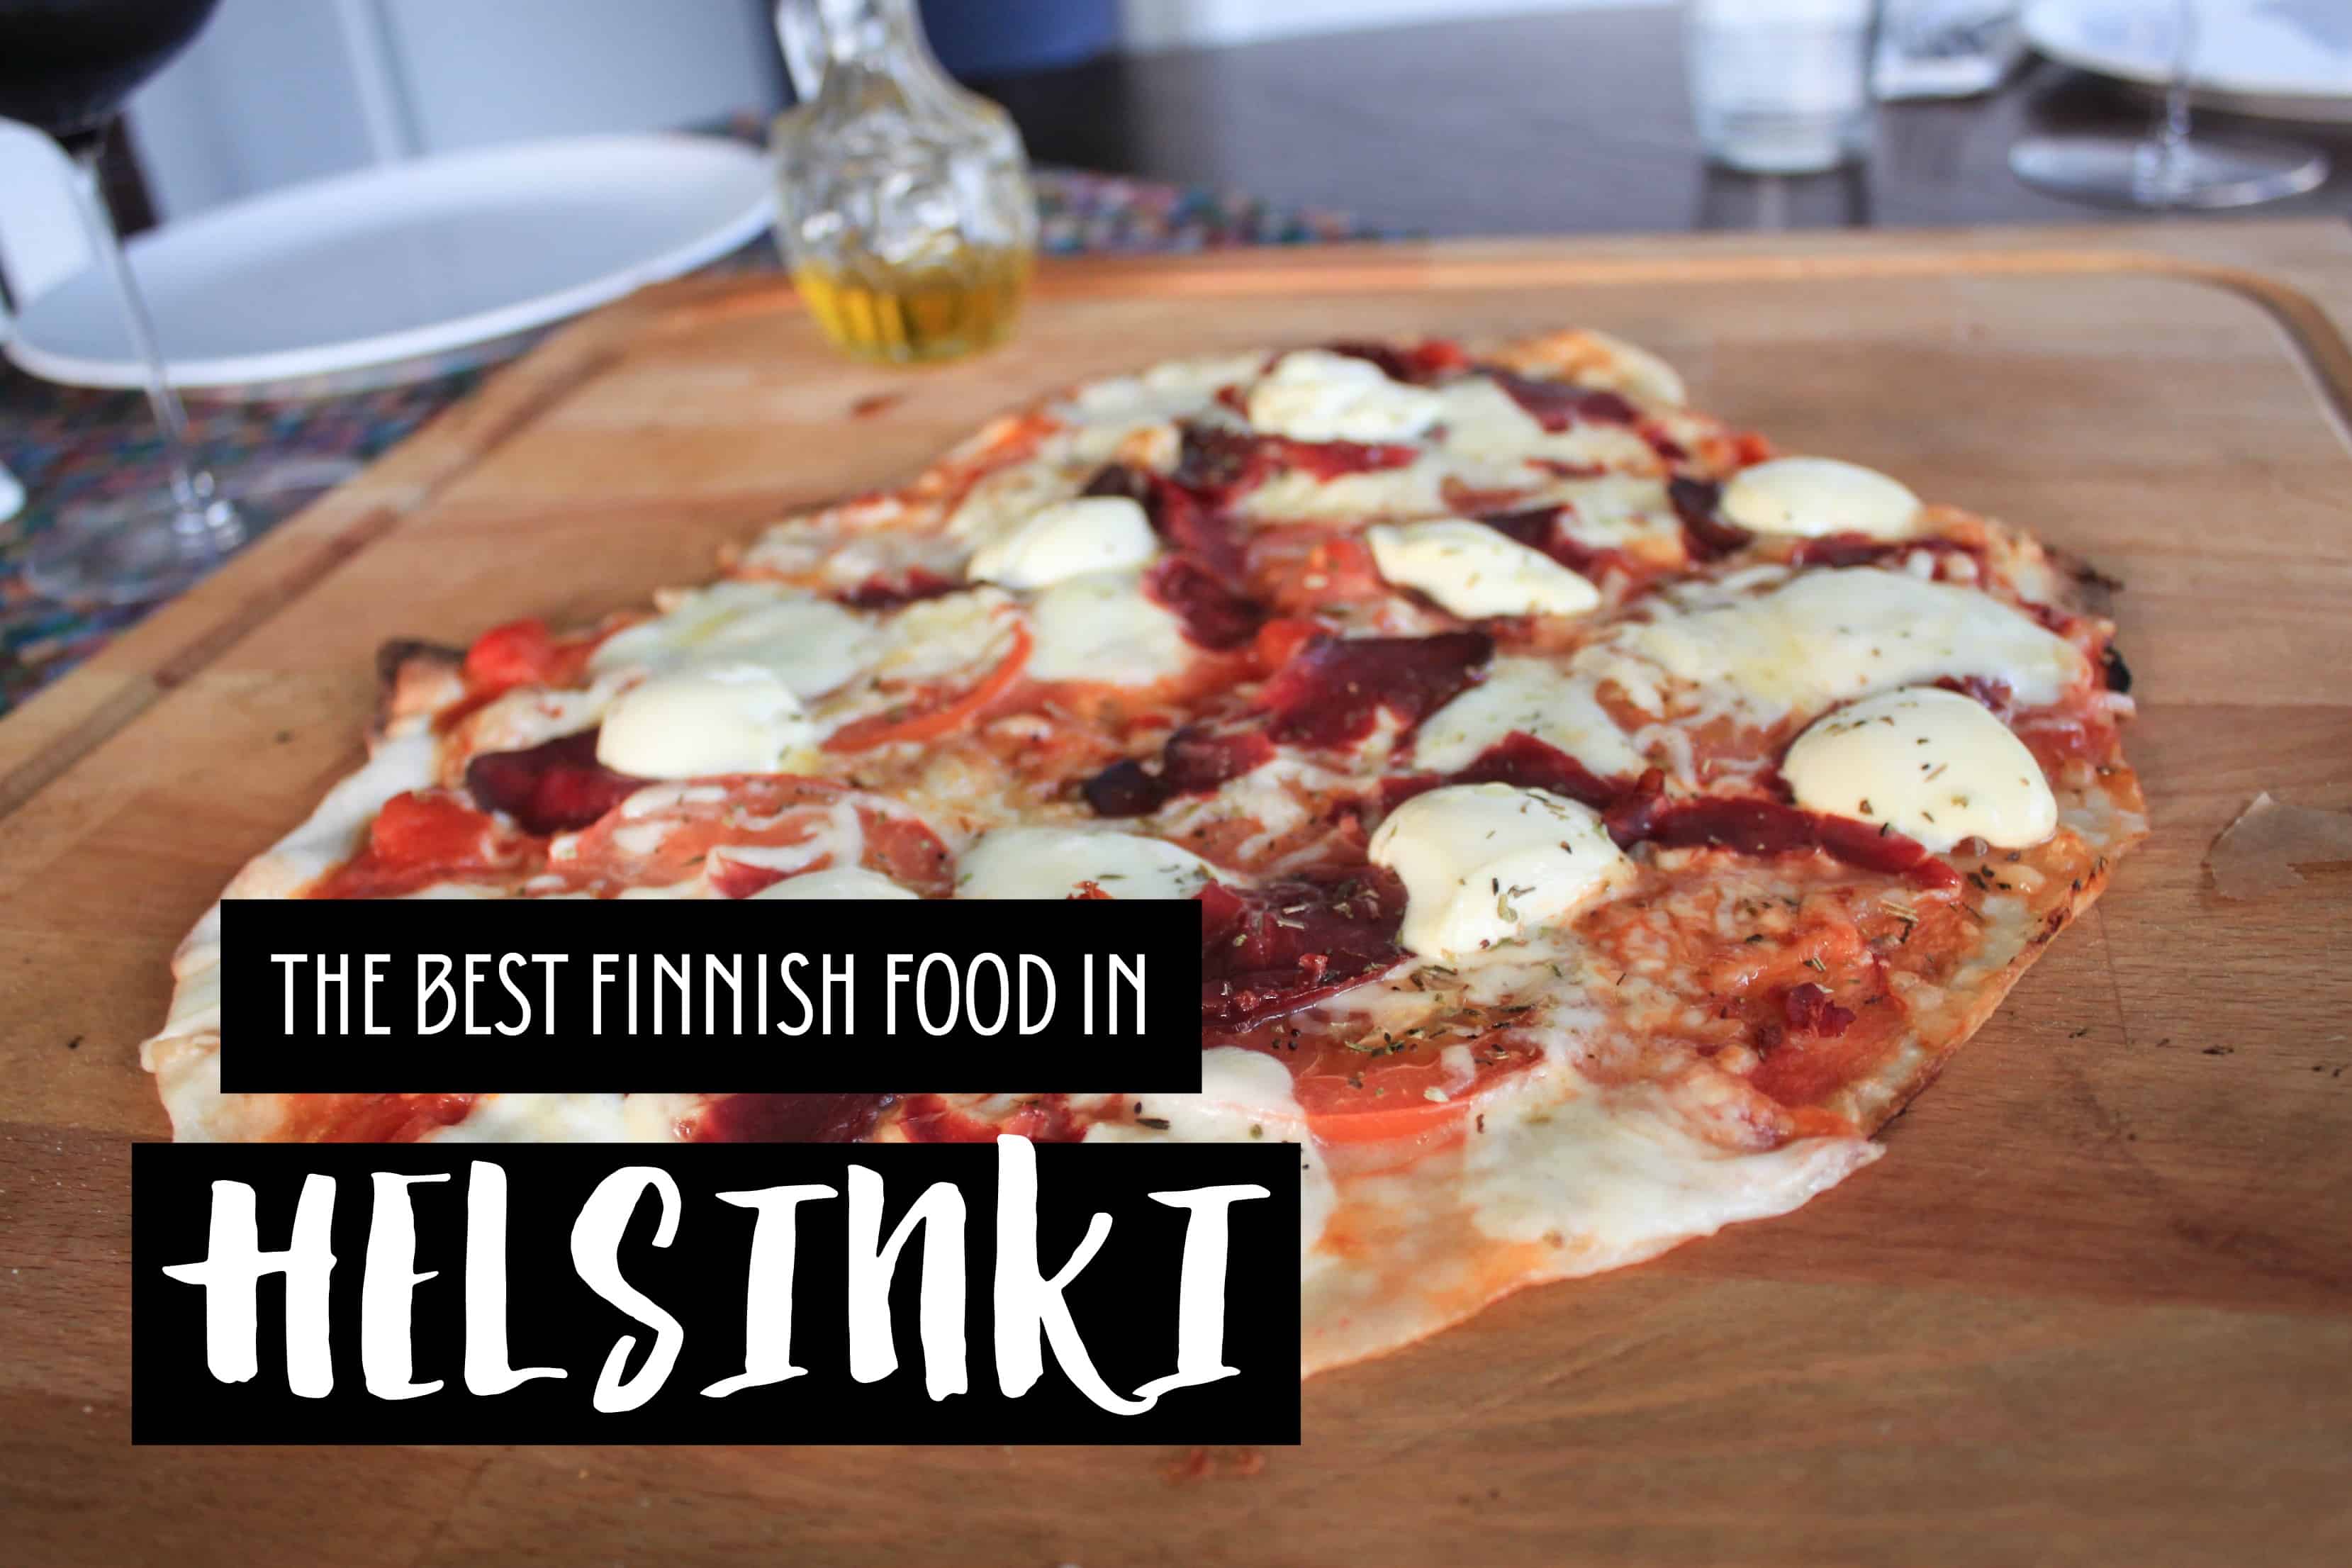 The best Finnish food in Helsinki